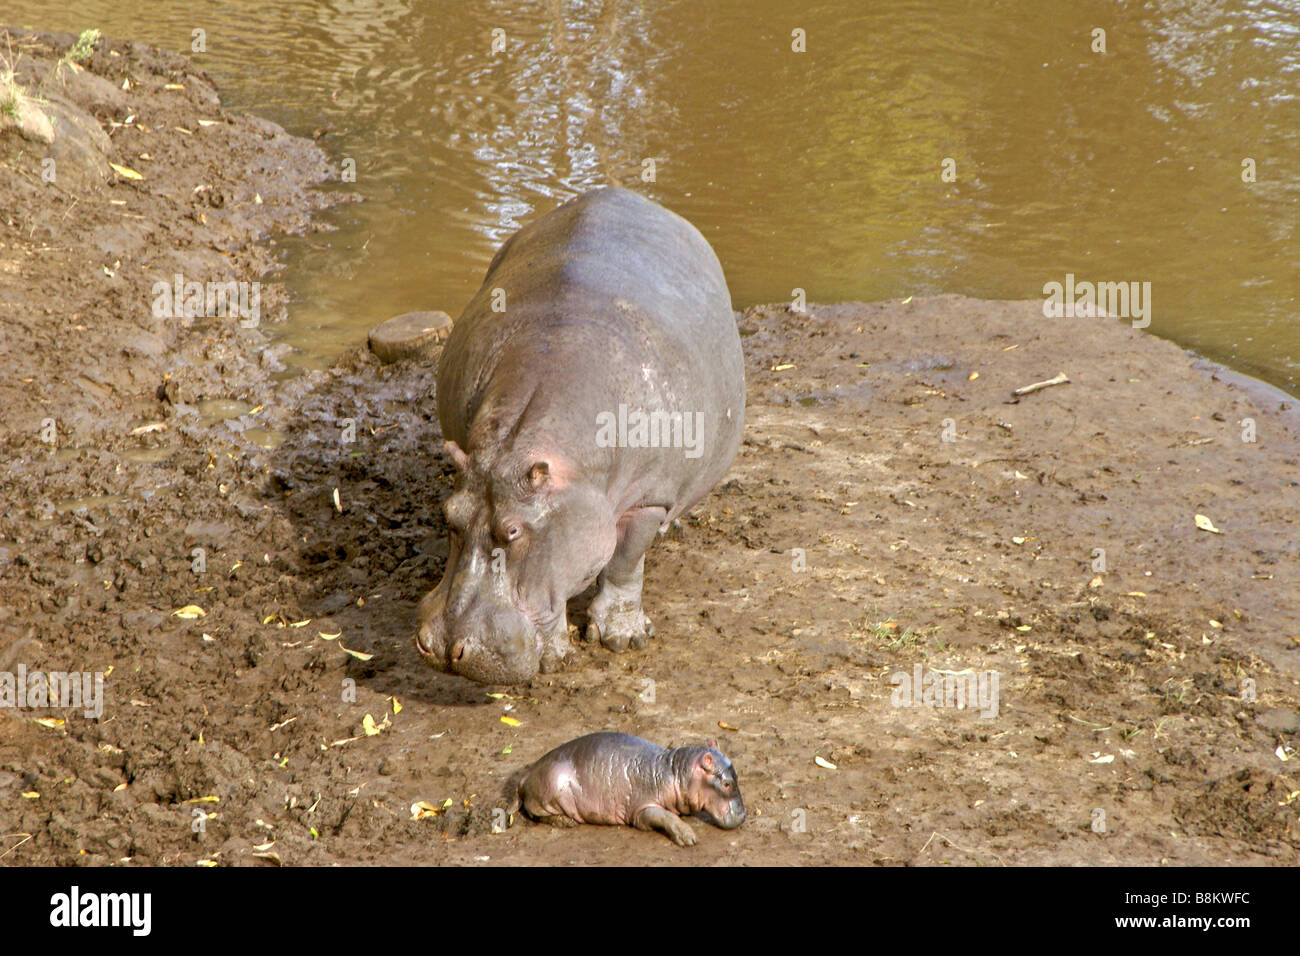 Female hippopotamus with newborn, Masai Mara, Kenya Stock Photo